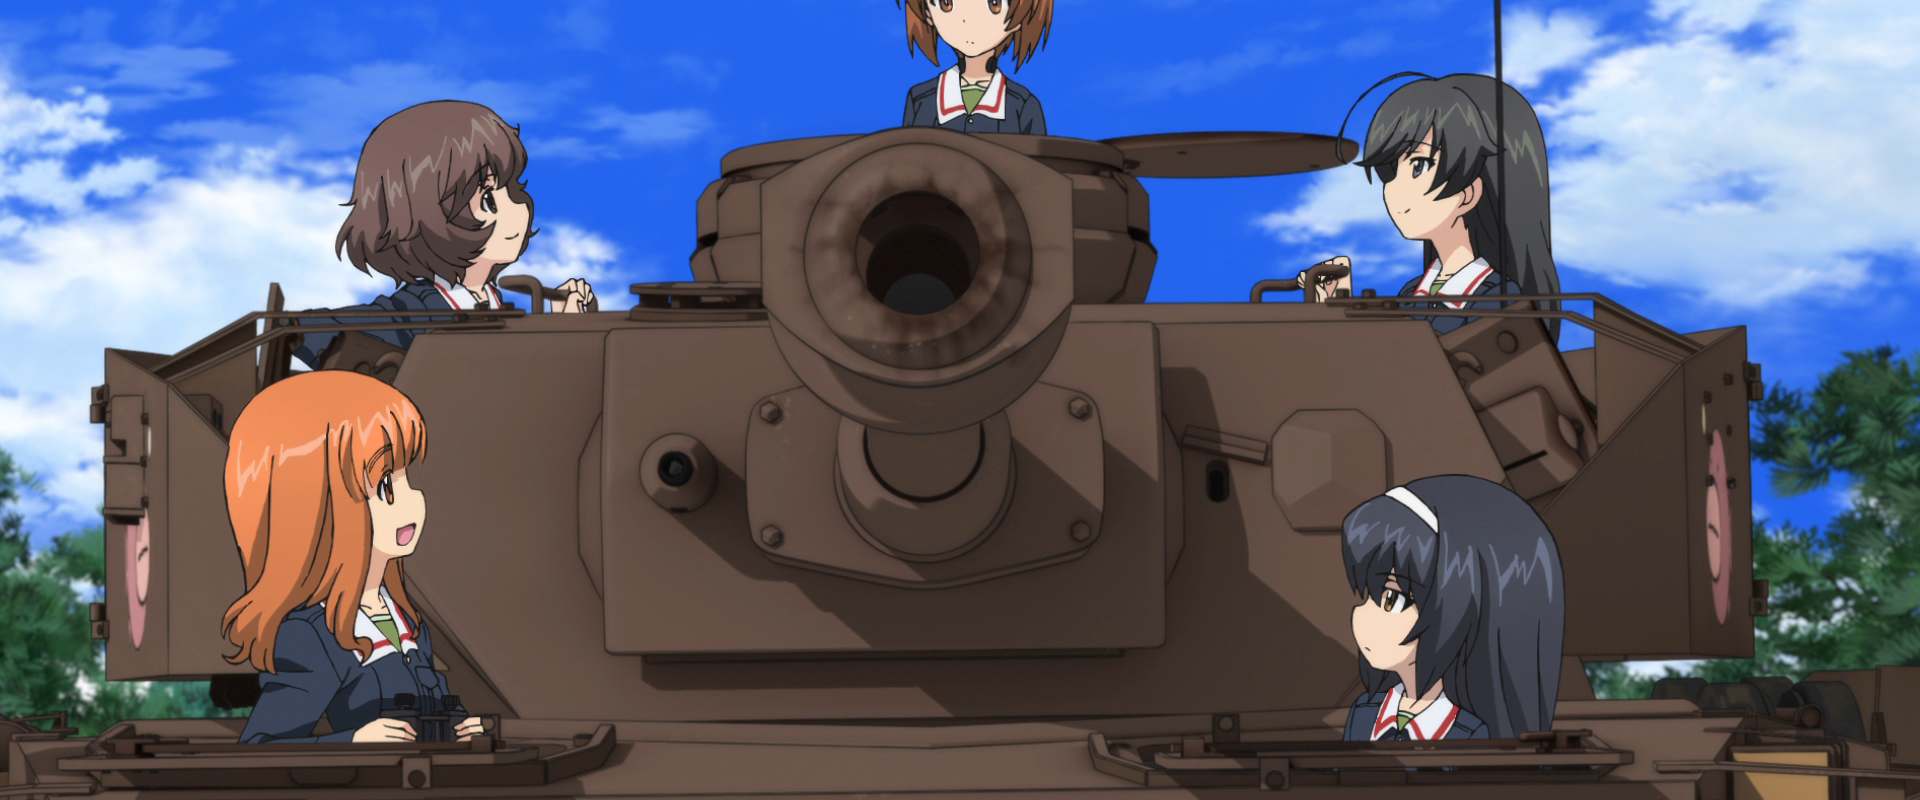 Girls und Panzer: The Movie background 1